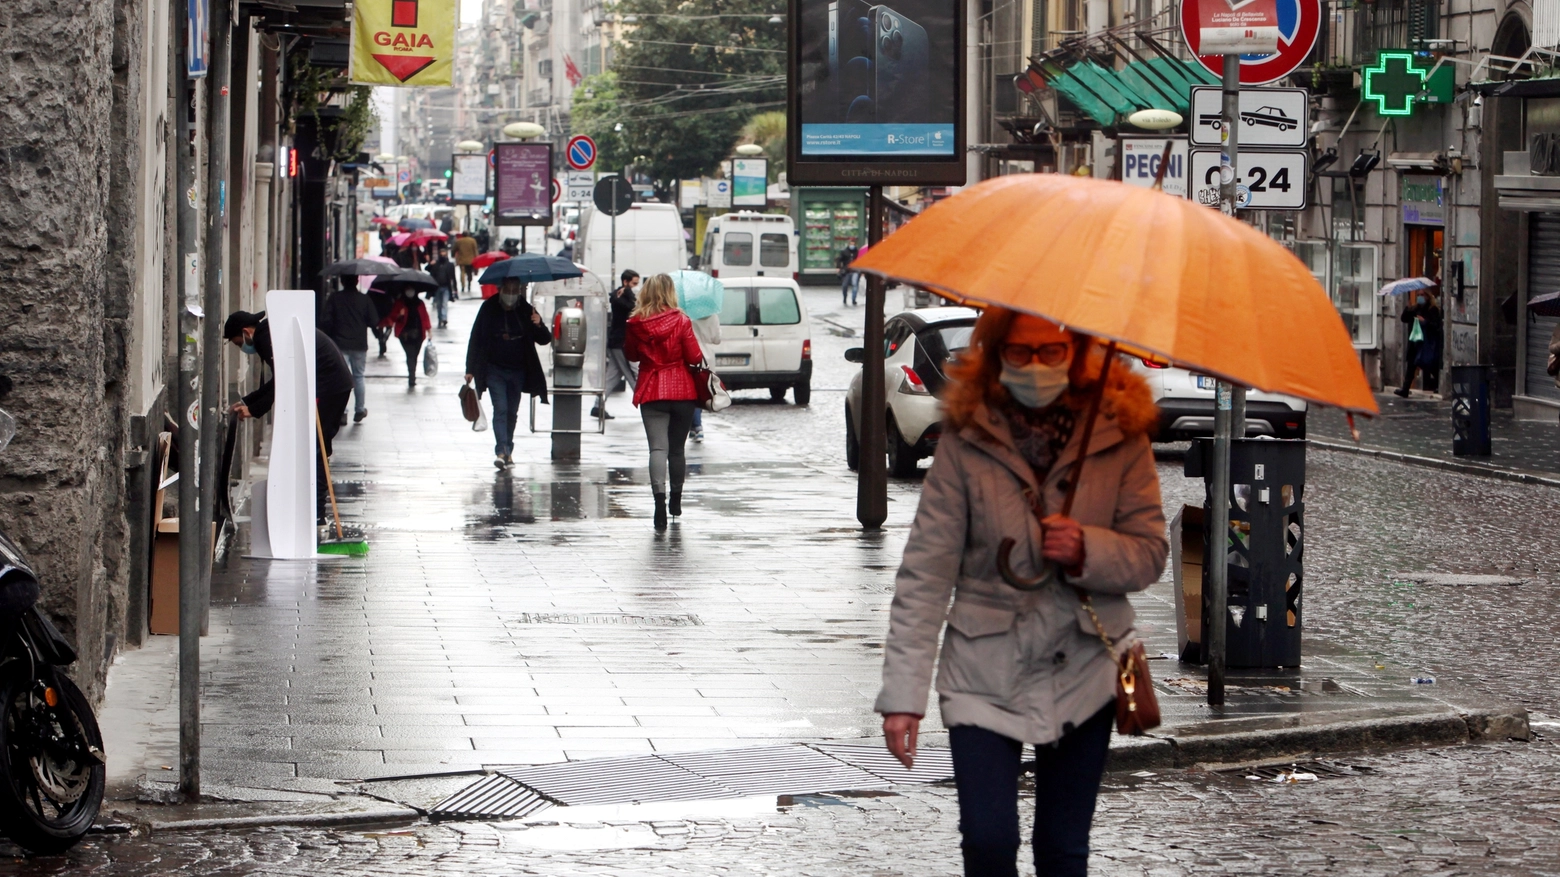 Maltempo: ombrelli aperti per la pioggia (ImagoE)